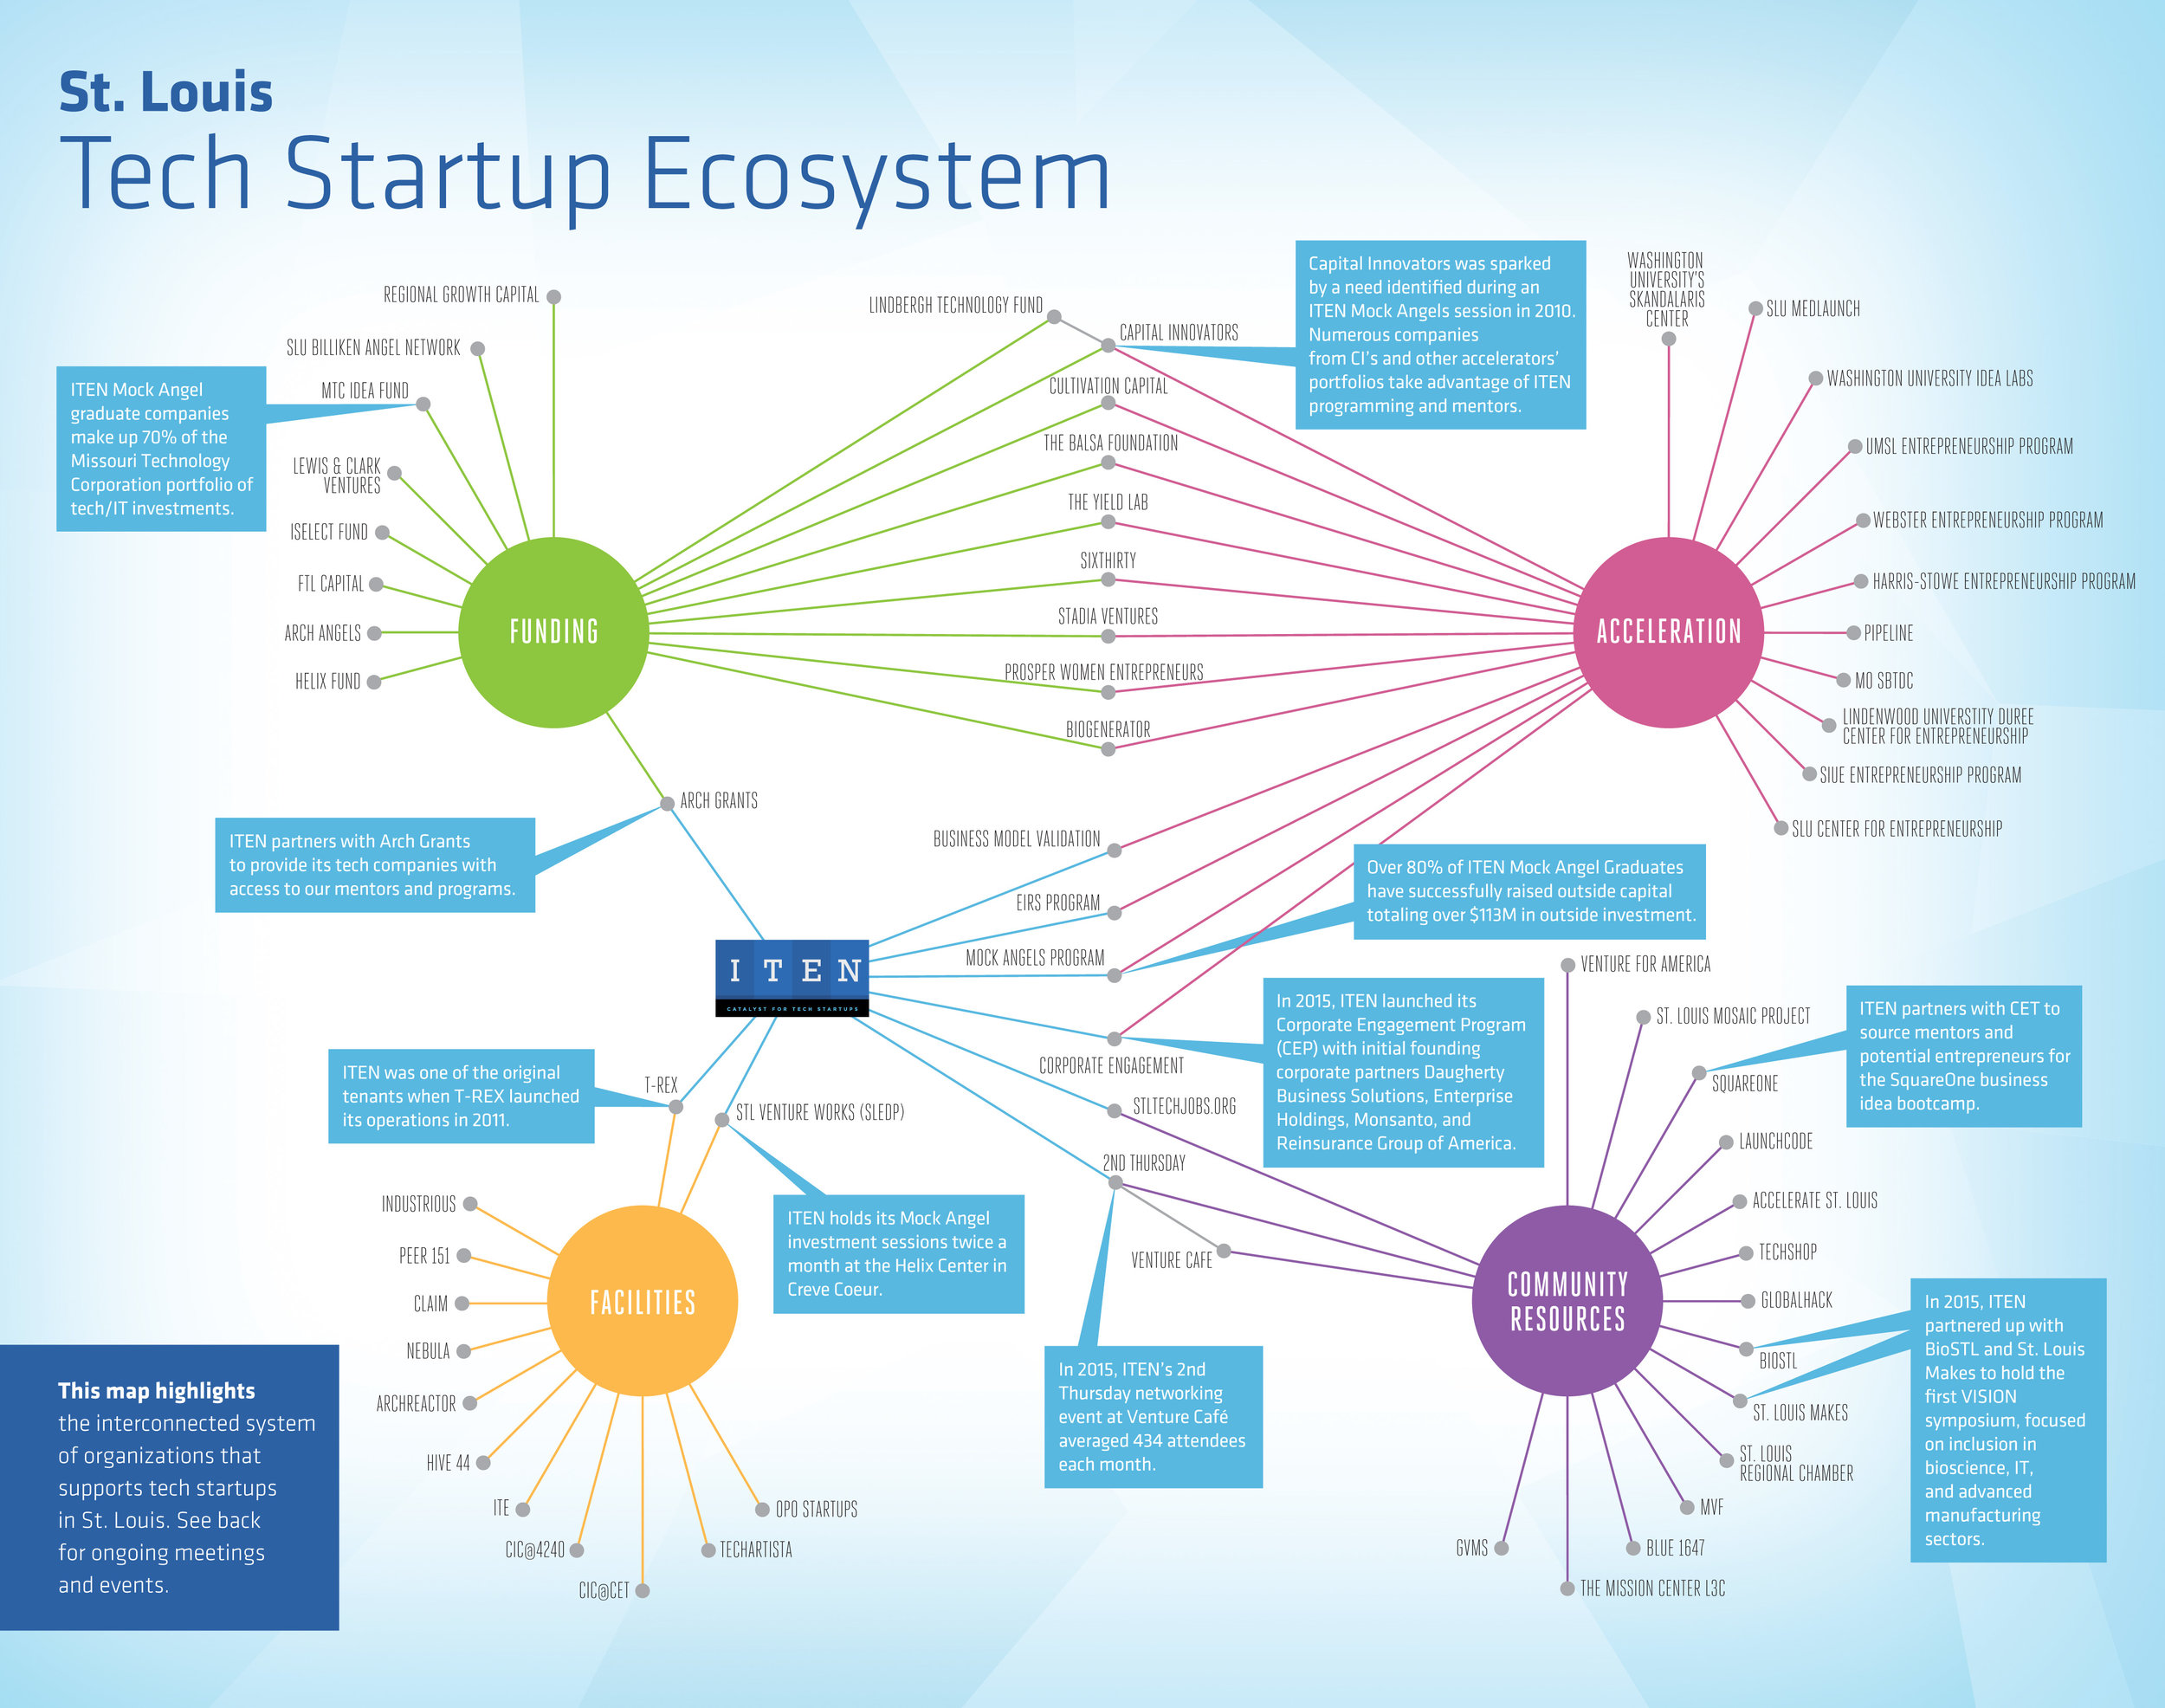 St. Louis tech startup ecosystem flowchart map